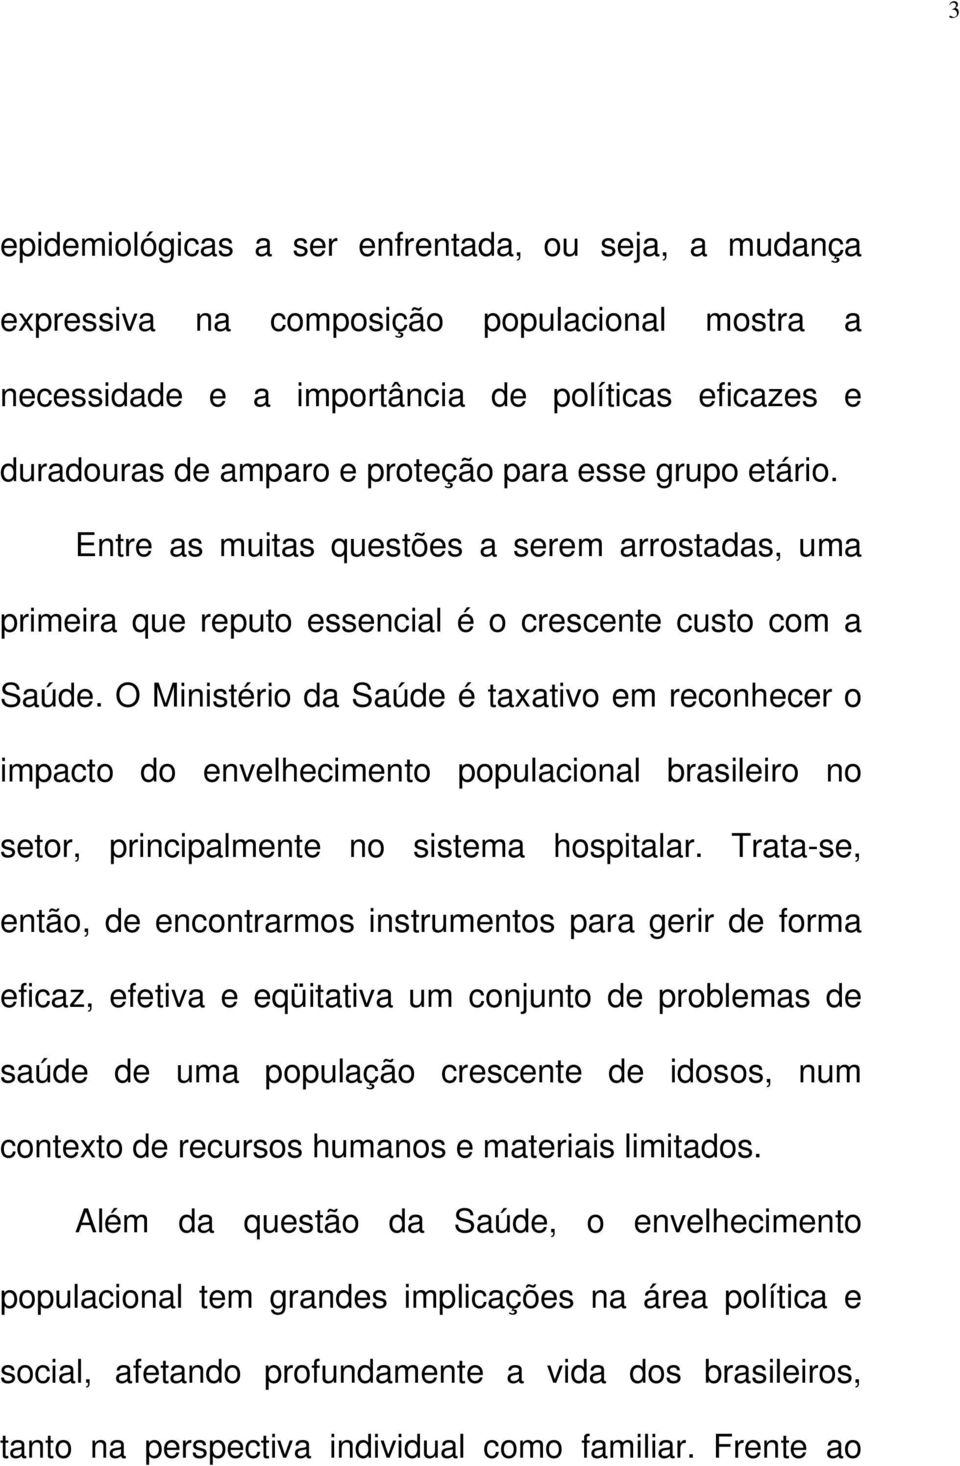 O Ministério da Saúde é taxativo em reconhecer o impacto do envelhecimento populacional brasileiro no setor, principalmente no sistema hospitalar.